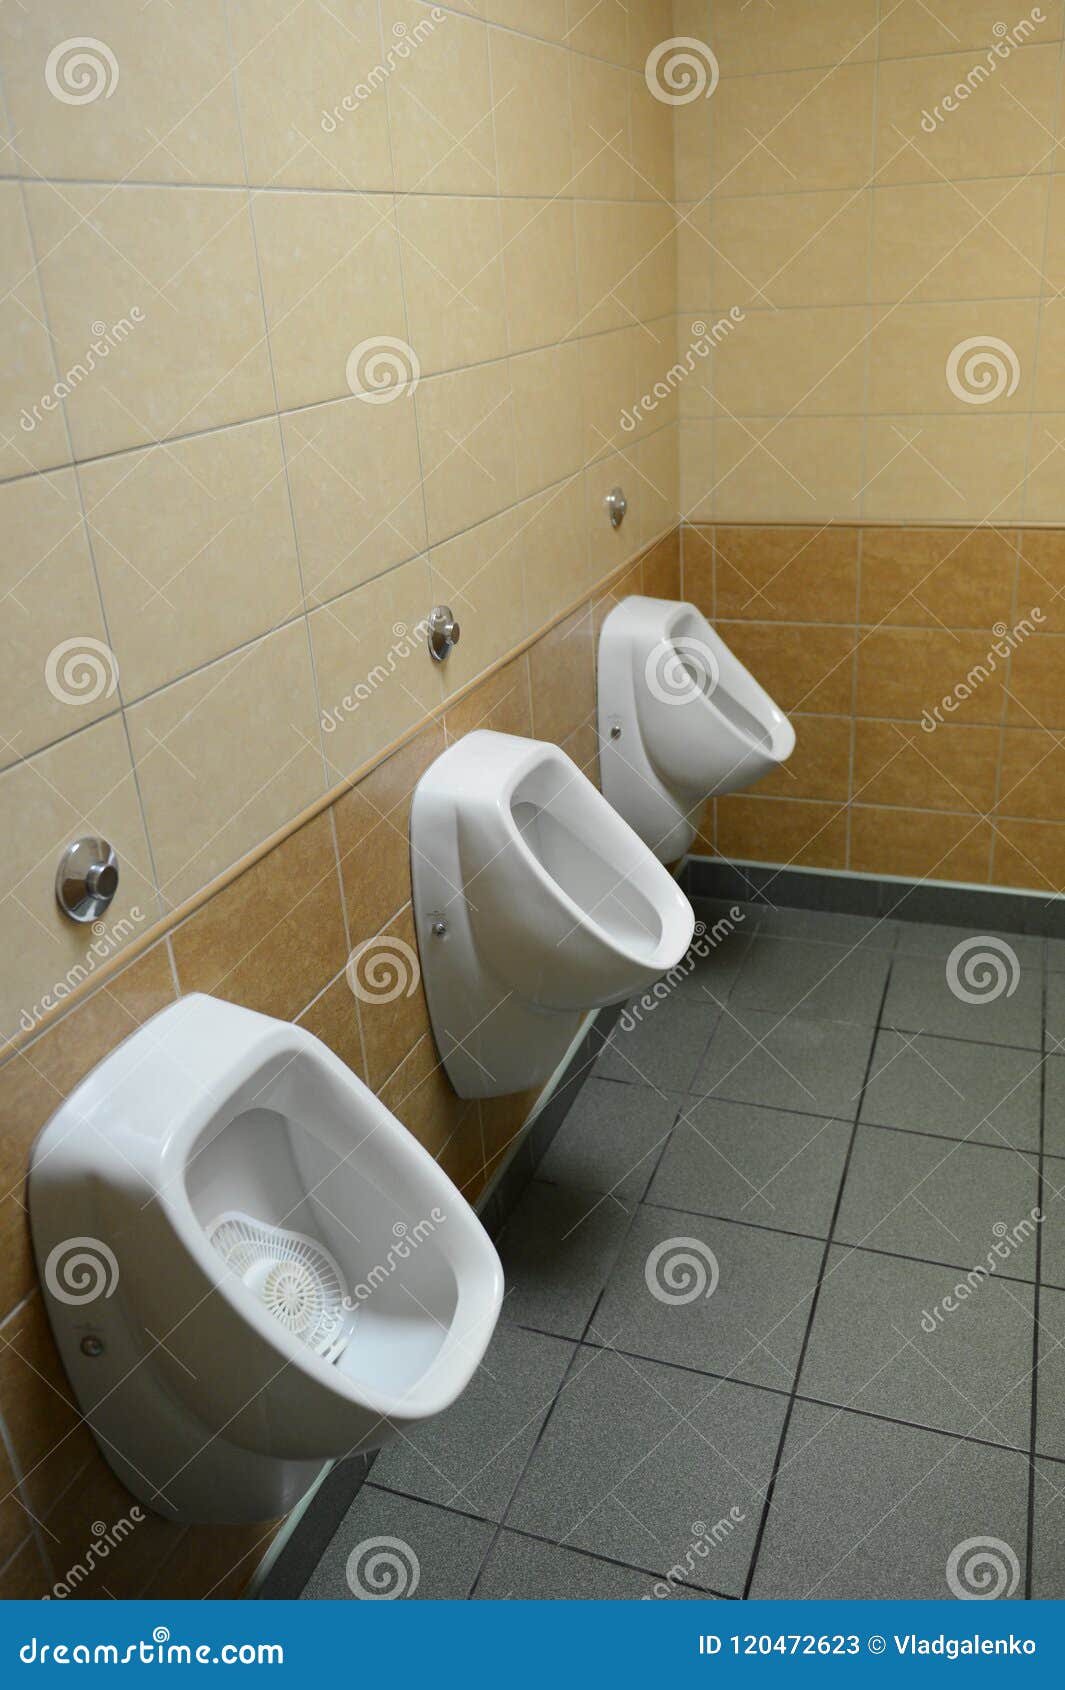 https://thumbs.dreamstime.com/z/moscow-russia-september-urinals-public-men-s-room-urinals-public-men-s-room-120472623.jpg